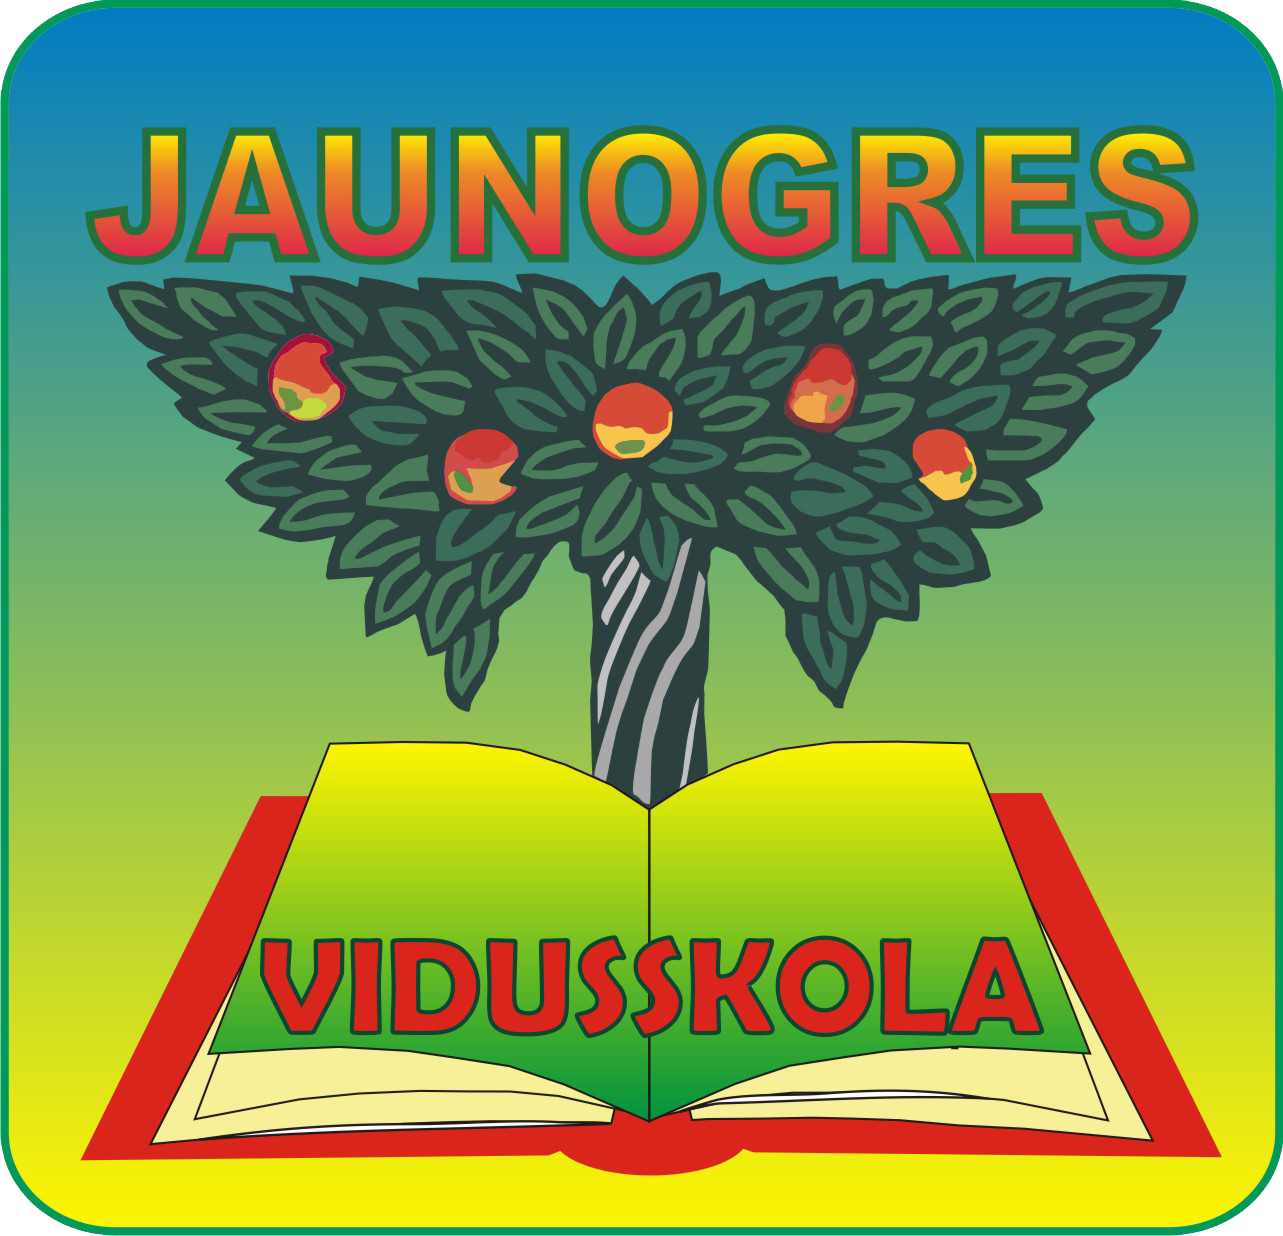 Jaunogres vidusskola